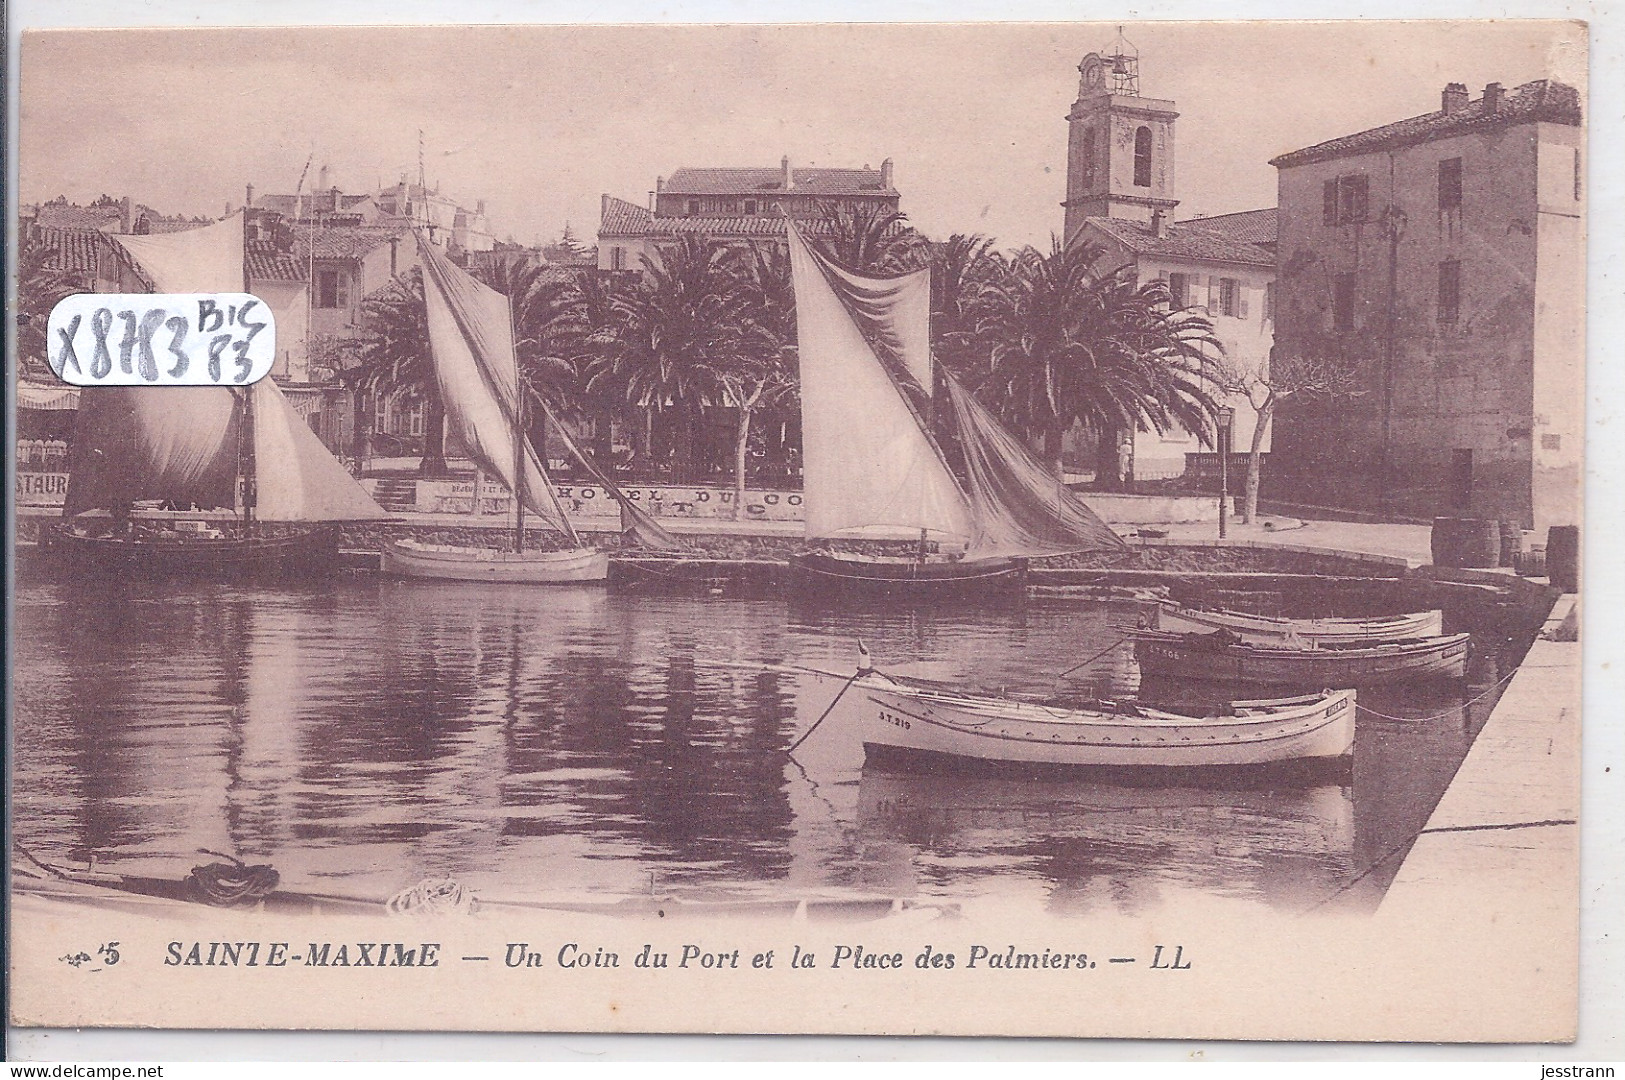 SAINTE-MAXIME- UN COIN DU PORT ET LA PLACE DES PALMIERS - Sainte-Maxime